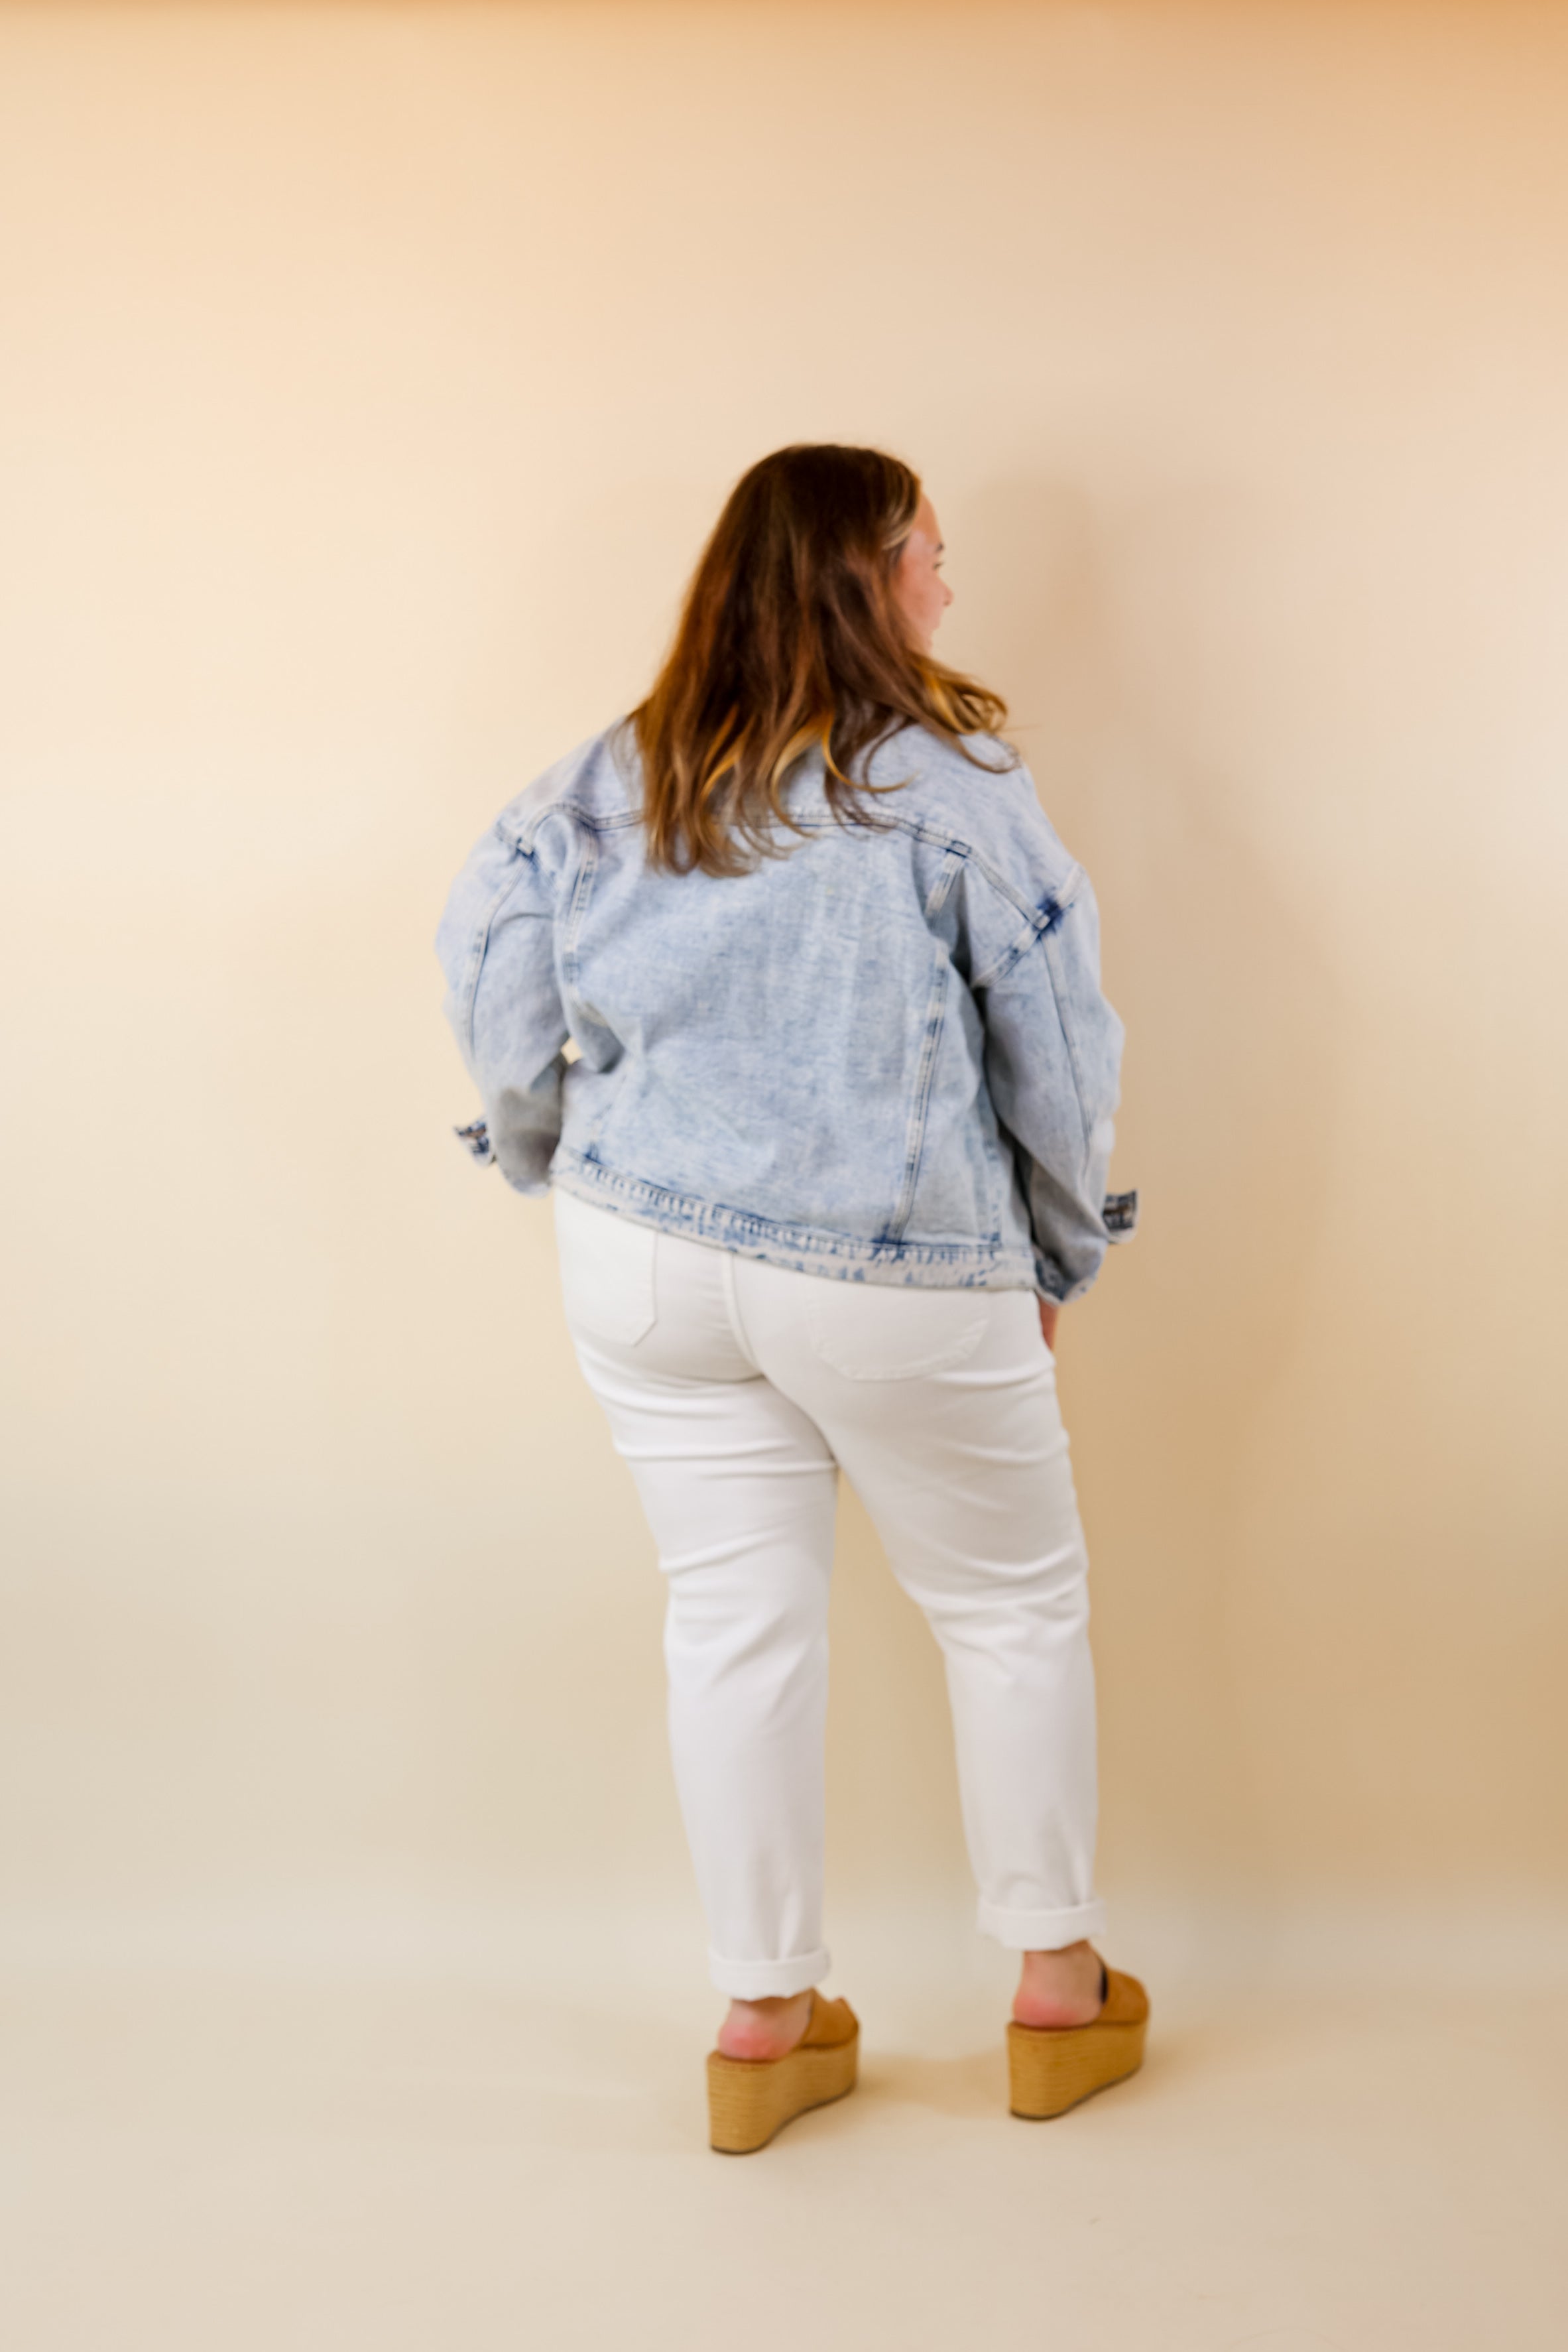 Take A Minute Crystal Front Pocket Denim Jacket in Light Wash - Giddy Up Glamour Boutique